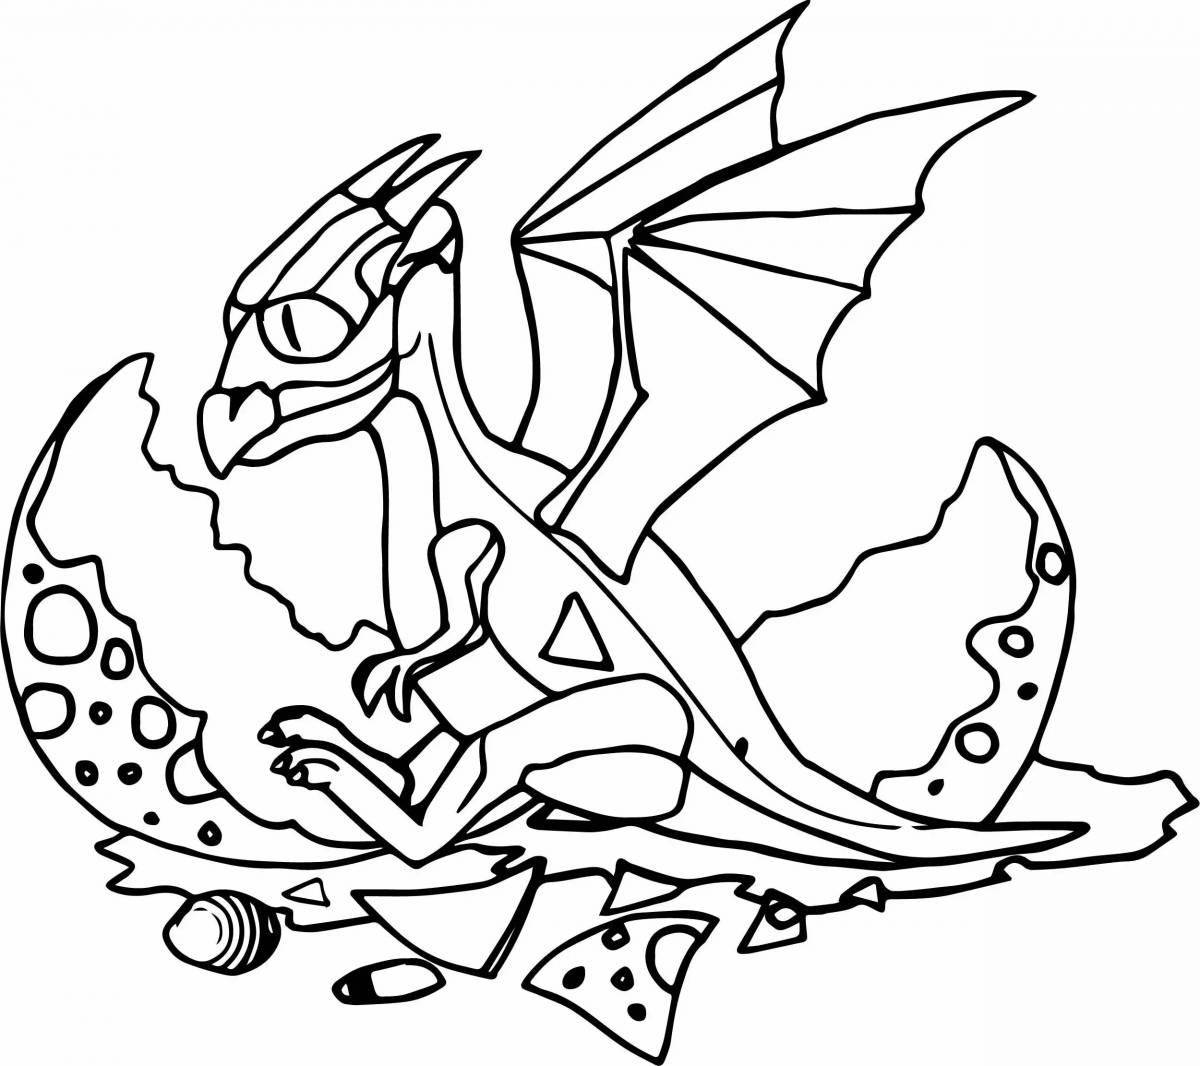 Увлекательная раскраска драконы для детей 4-5 лет